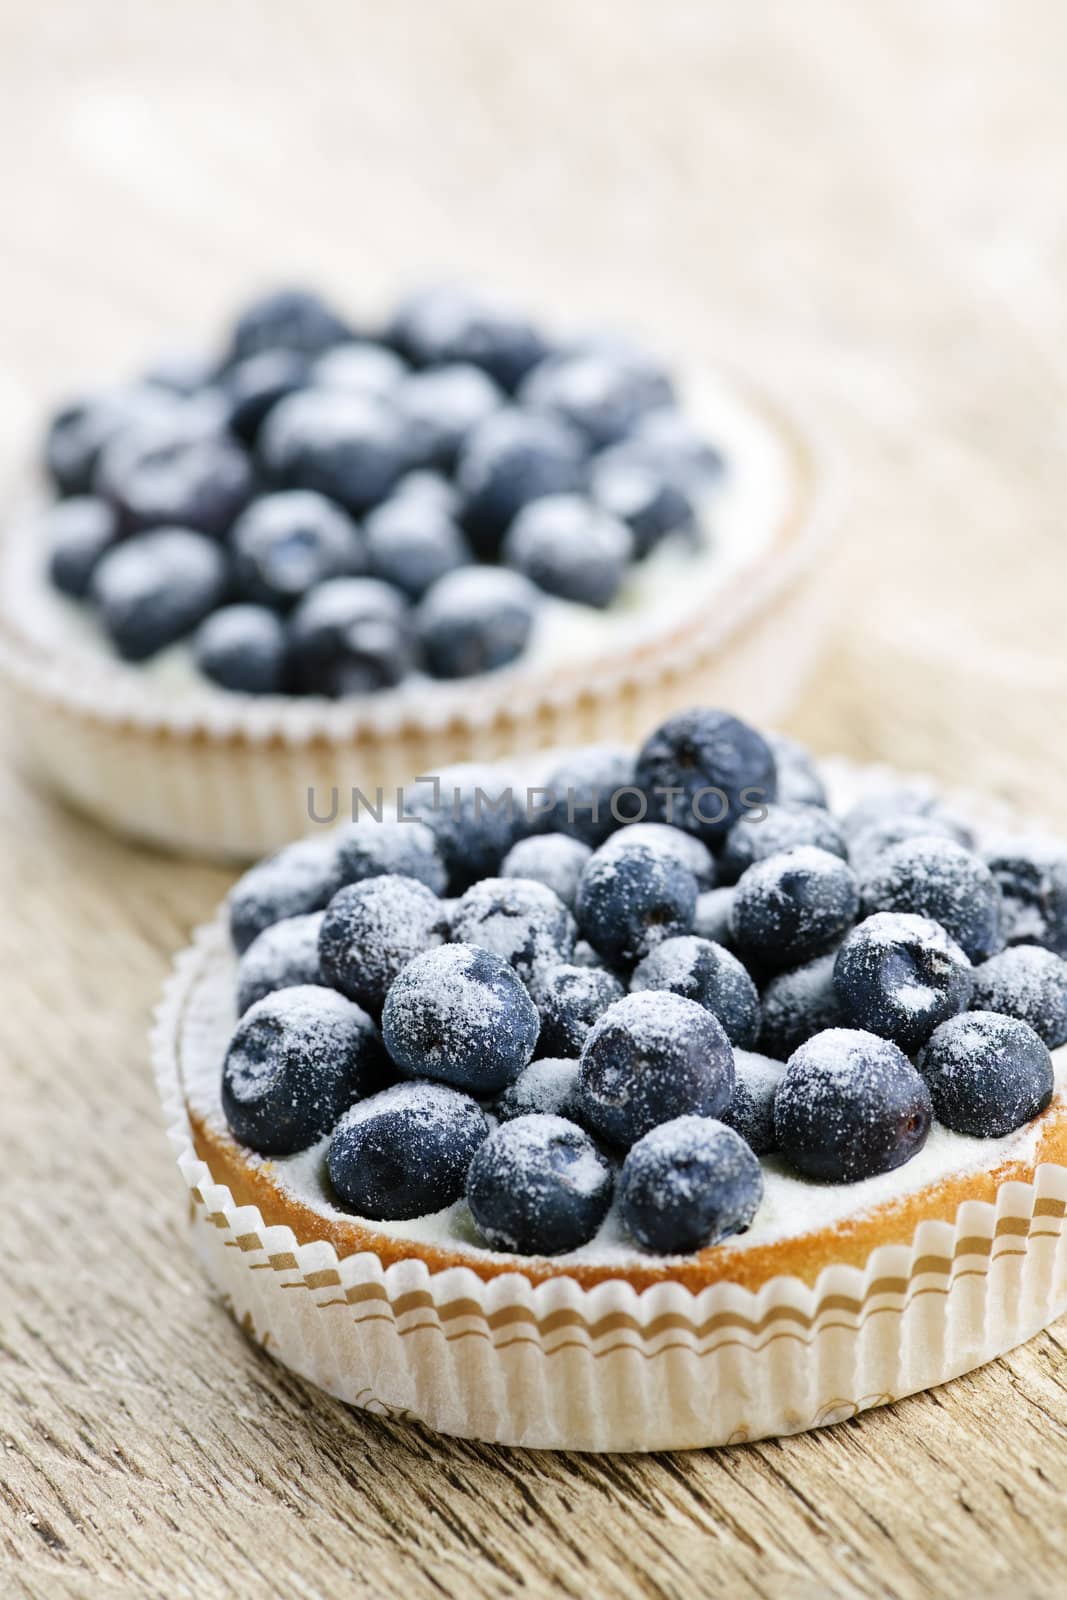 Blueberry tarts by elenathewise